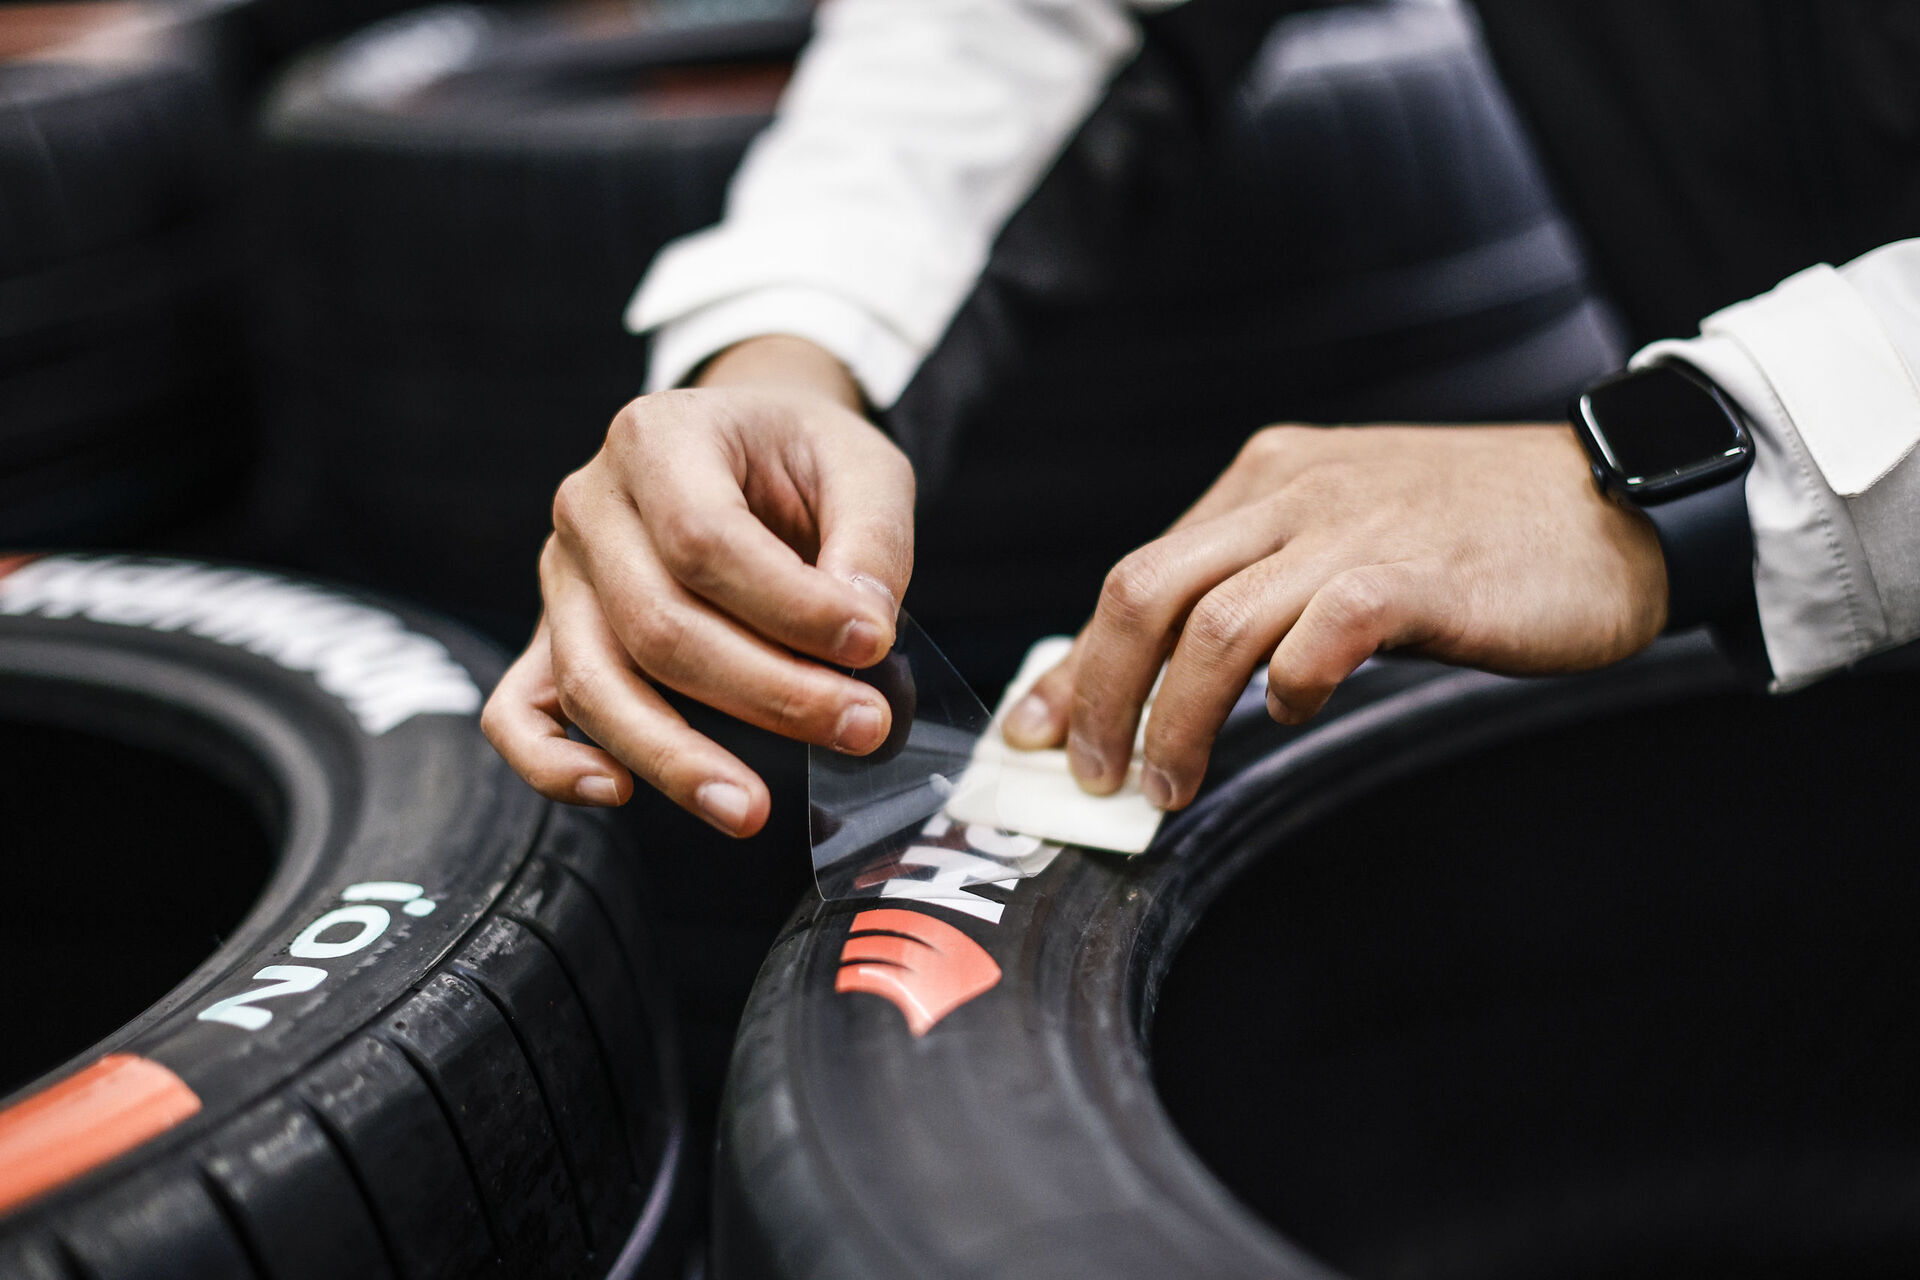 Vývoj pneumatik značky Hankook pro Formuli E